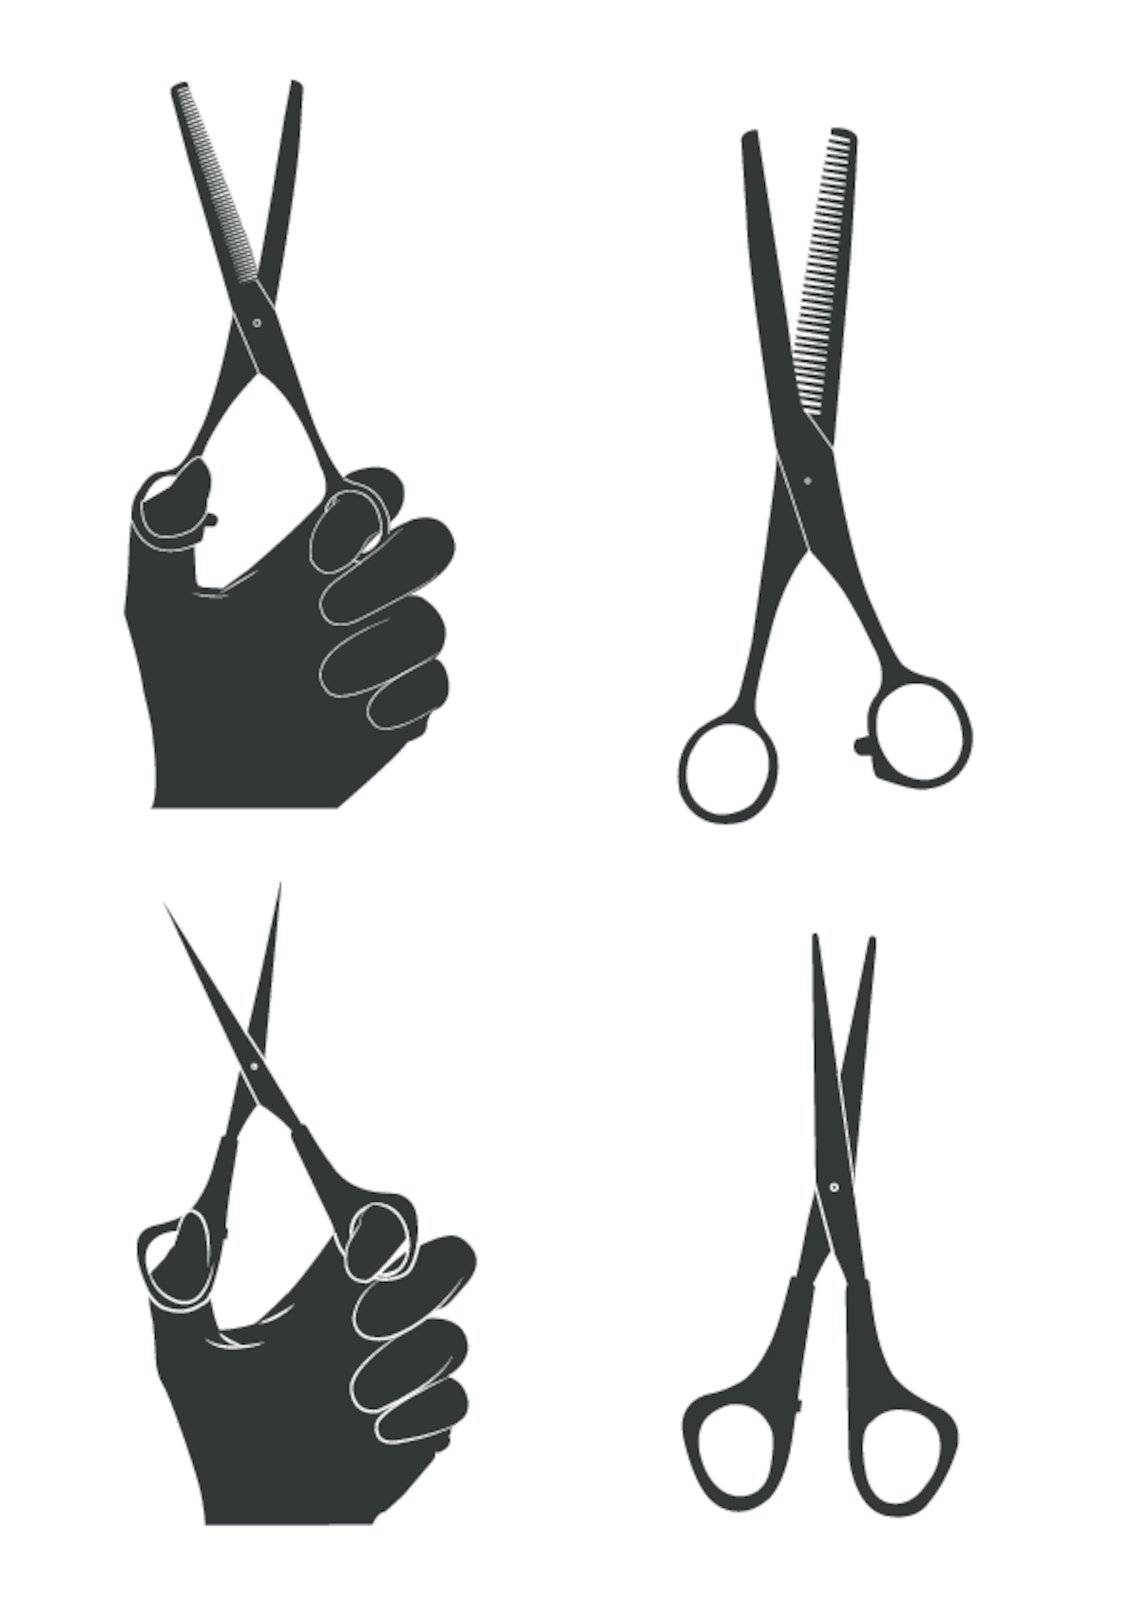 hairdresser scissors set. scissors in hand. vectors.